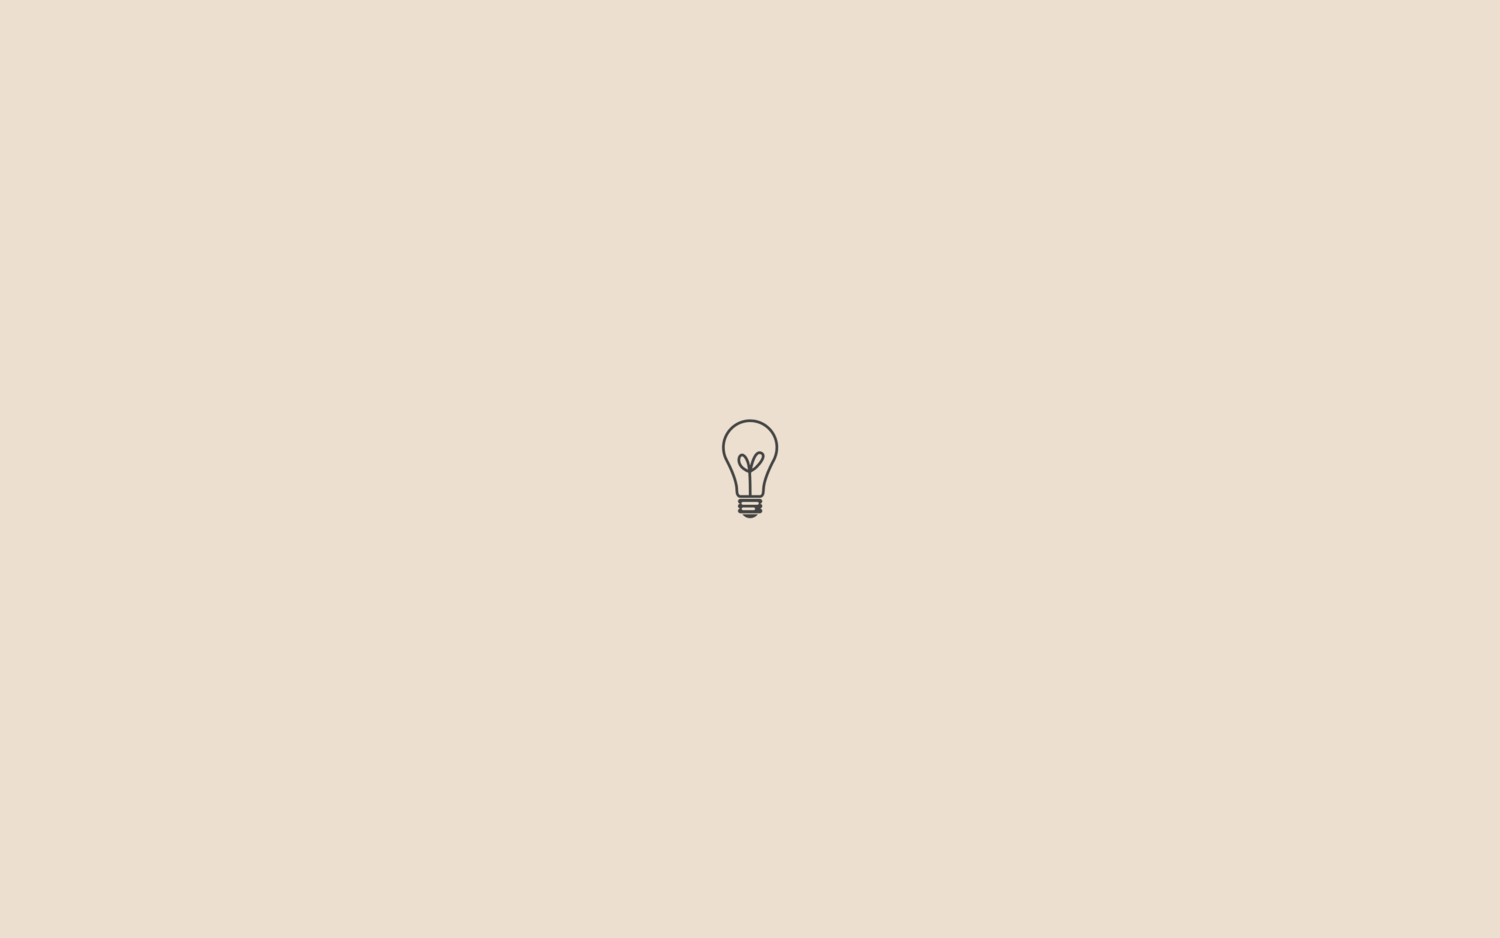 [Góc tối giản] Hình nền cho người theo phong cách minimalism